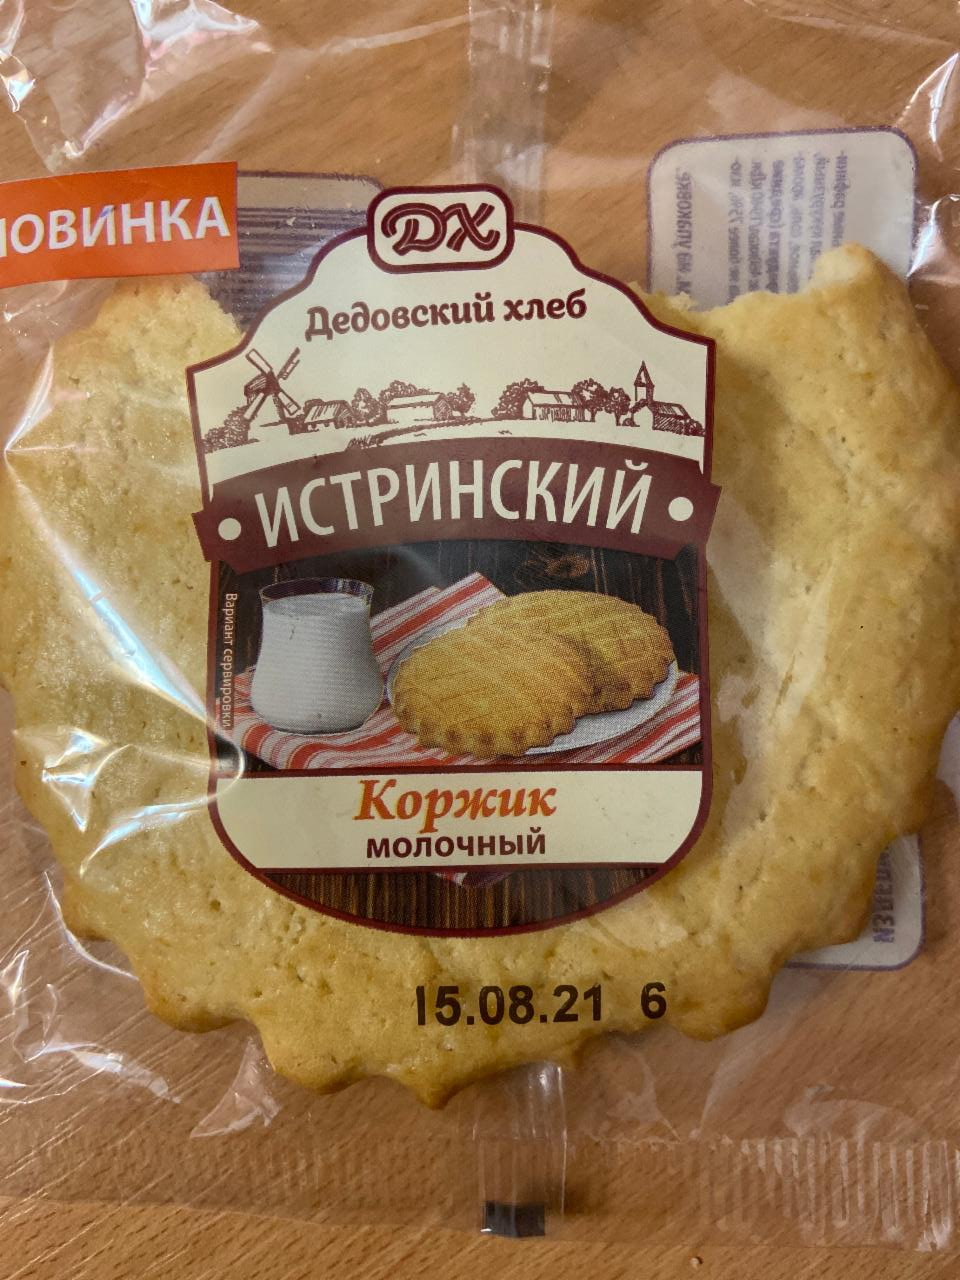 Фото - Коржик молочный Истринский Дедовский хлеб